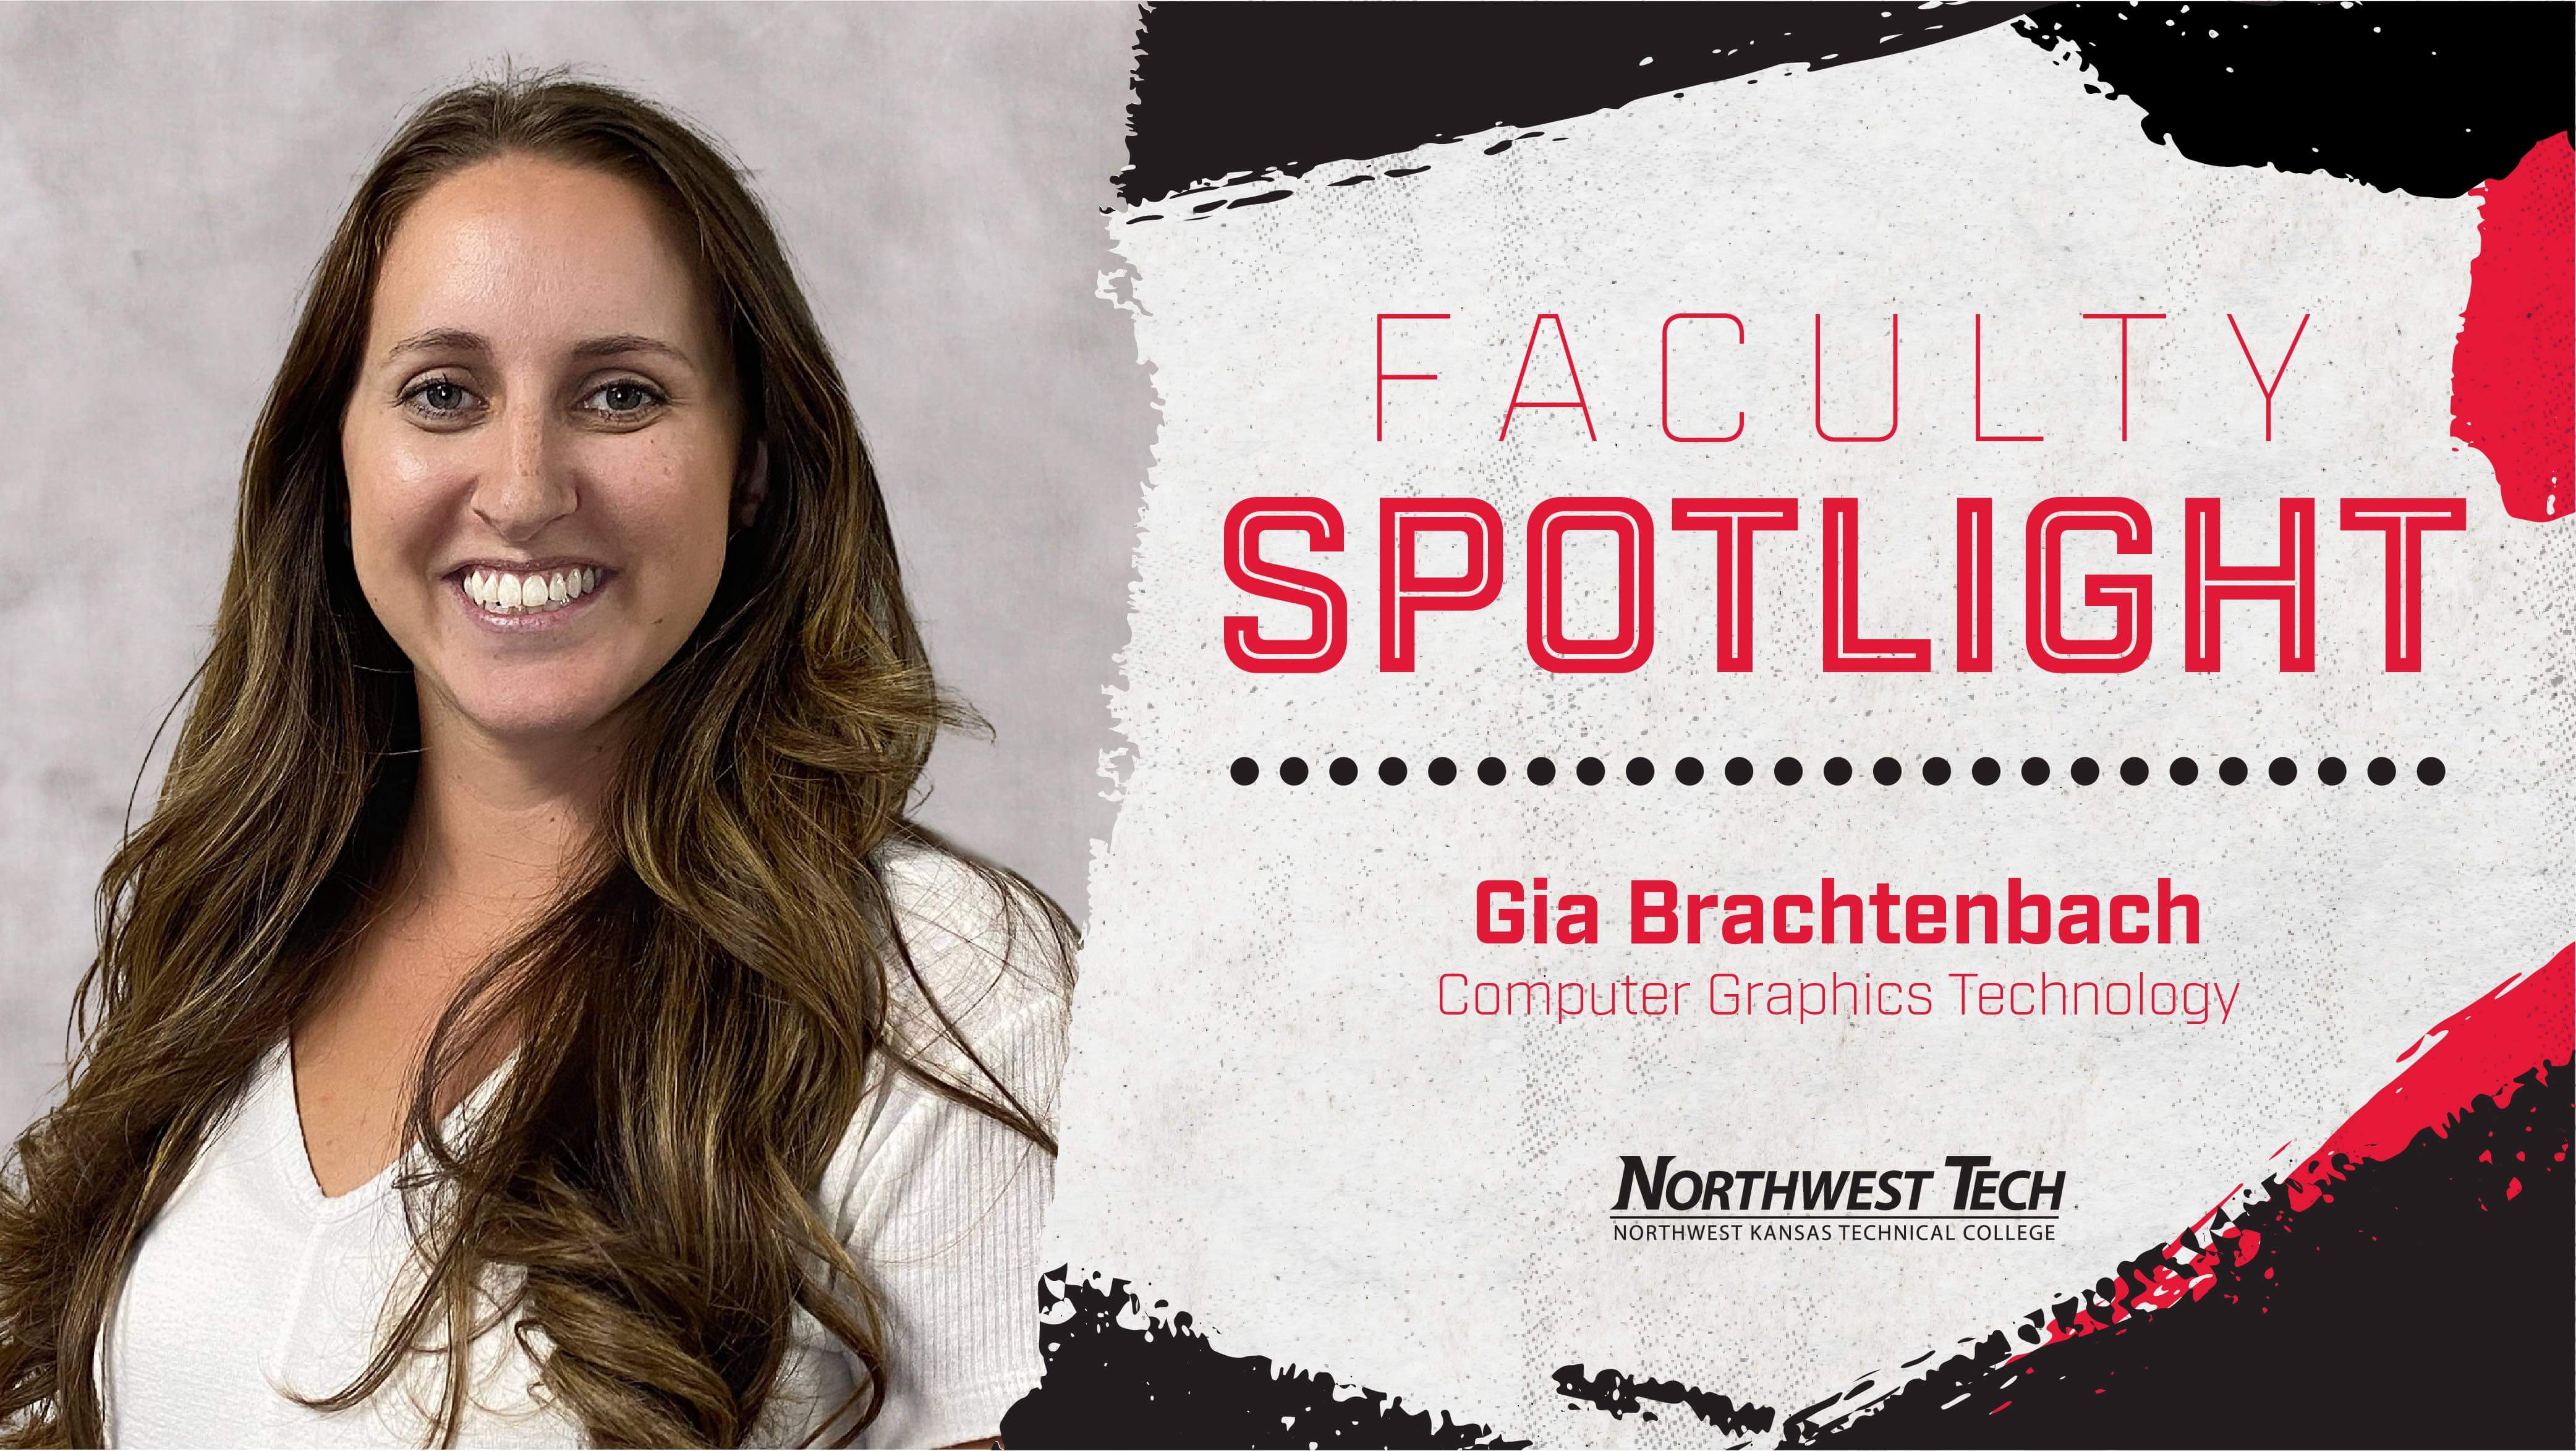 Faculty Spotlight - Gia Brachtenbach